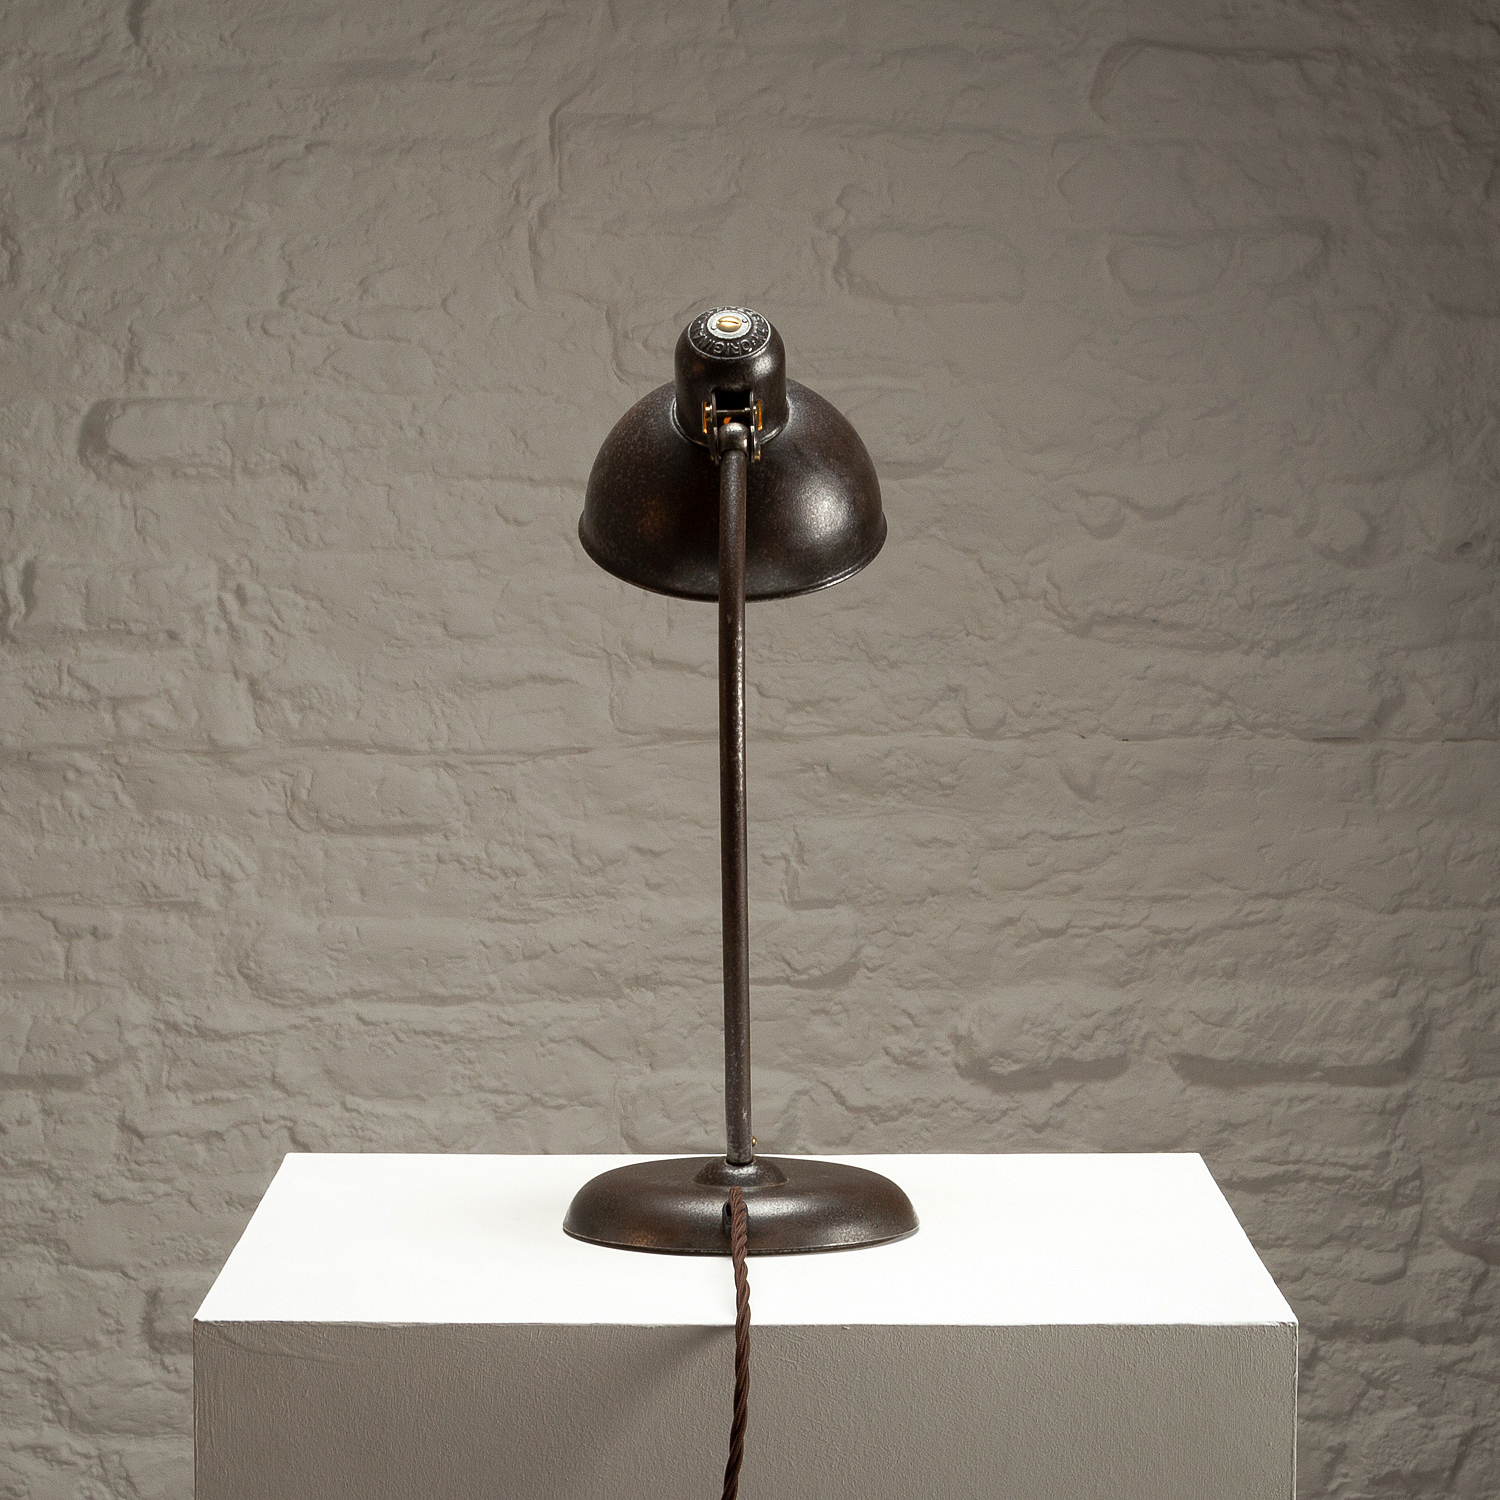 Model 6551 Bauhaus Desk Light by Christian Dell for Kaiser Idell